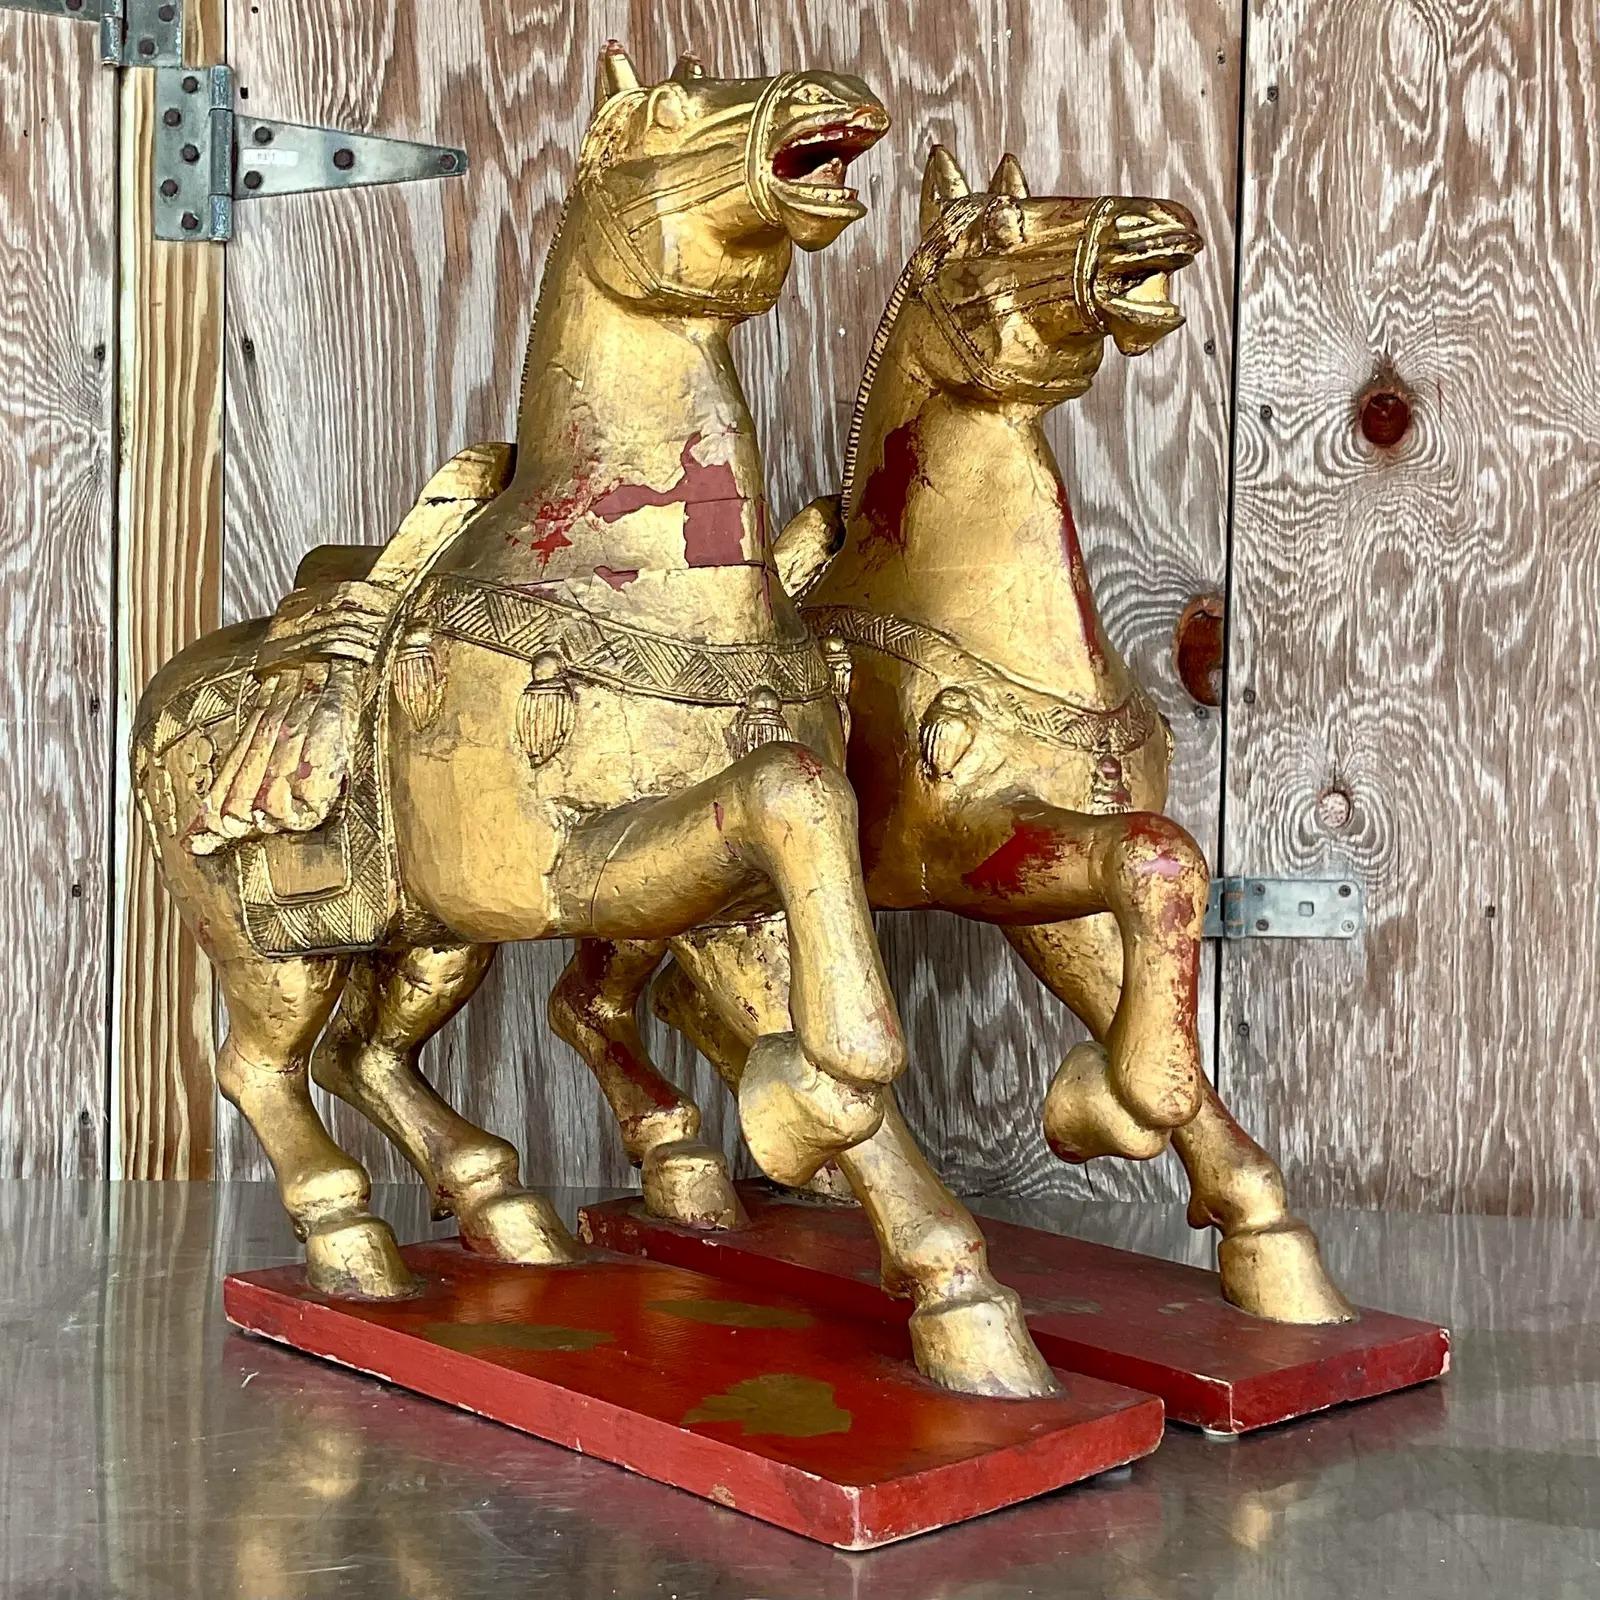 Ein fantastisches Paar asiatischer Kaiserpferde im Vintage-Stil. Schönes geschnitztes Holz mit vergoldeter Oberfläche. Wunderschöne Patina im Laufe der Zeit. Blitze der roten Farbe unter dem Gold. Erworben aus einem Nachlass in Palm Beach.